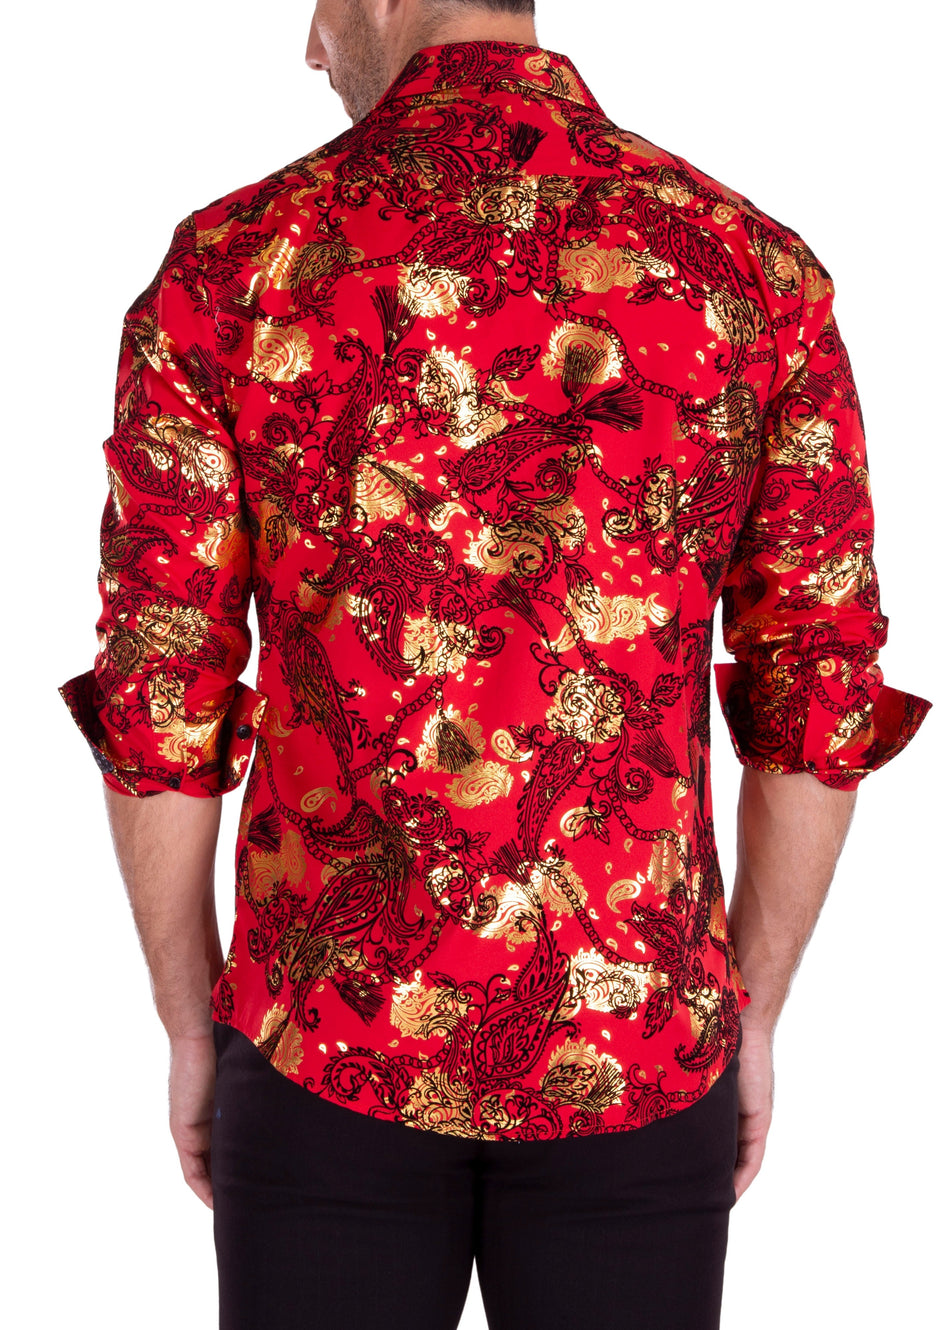 232205 - Red Button Up Long Sleeve Dress Shirt